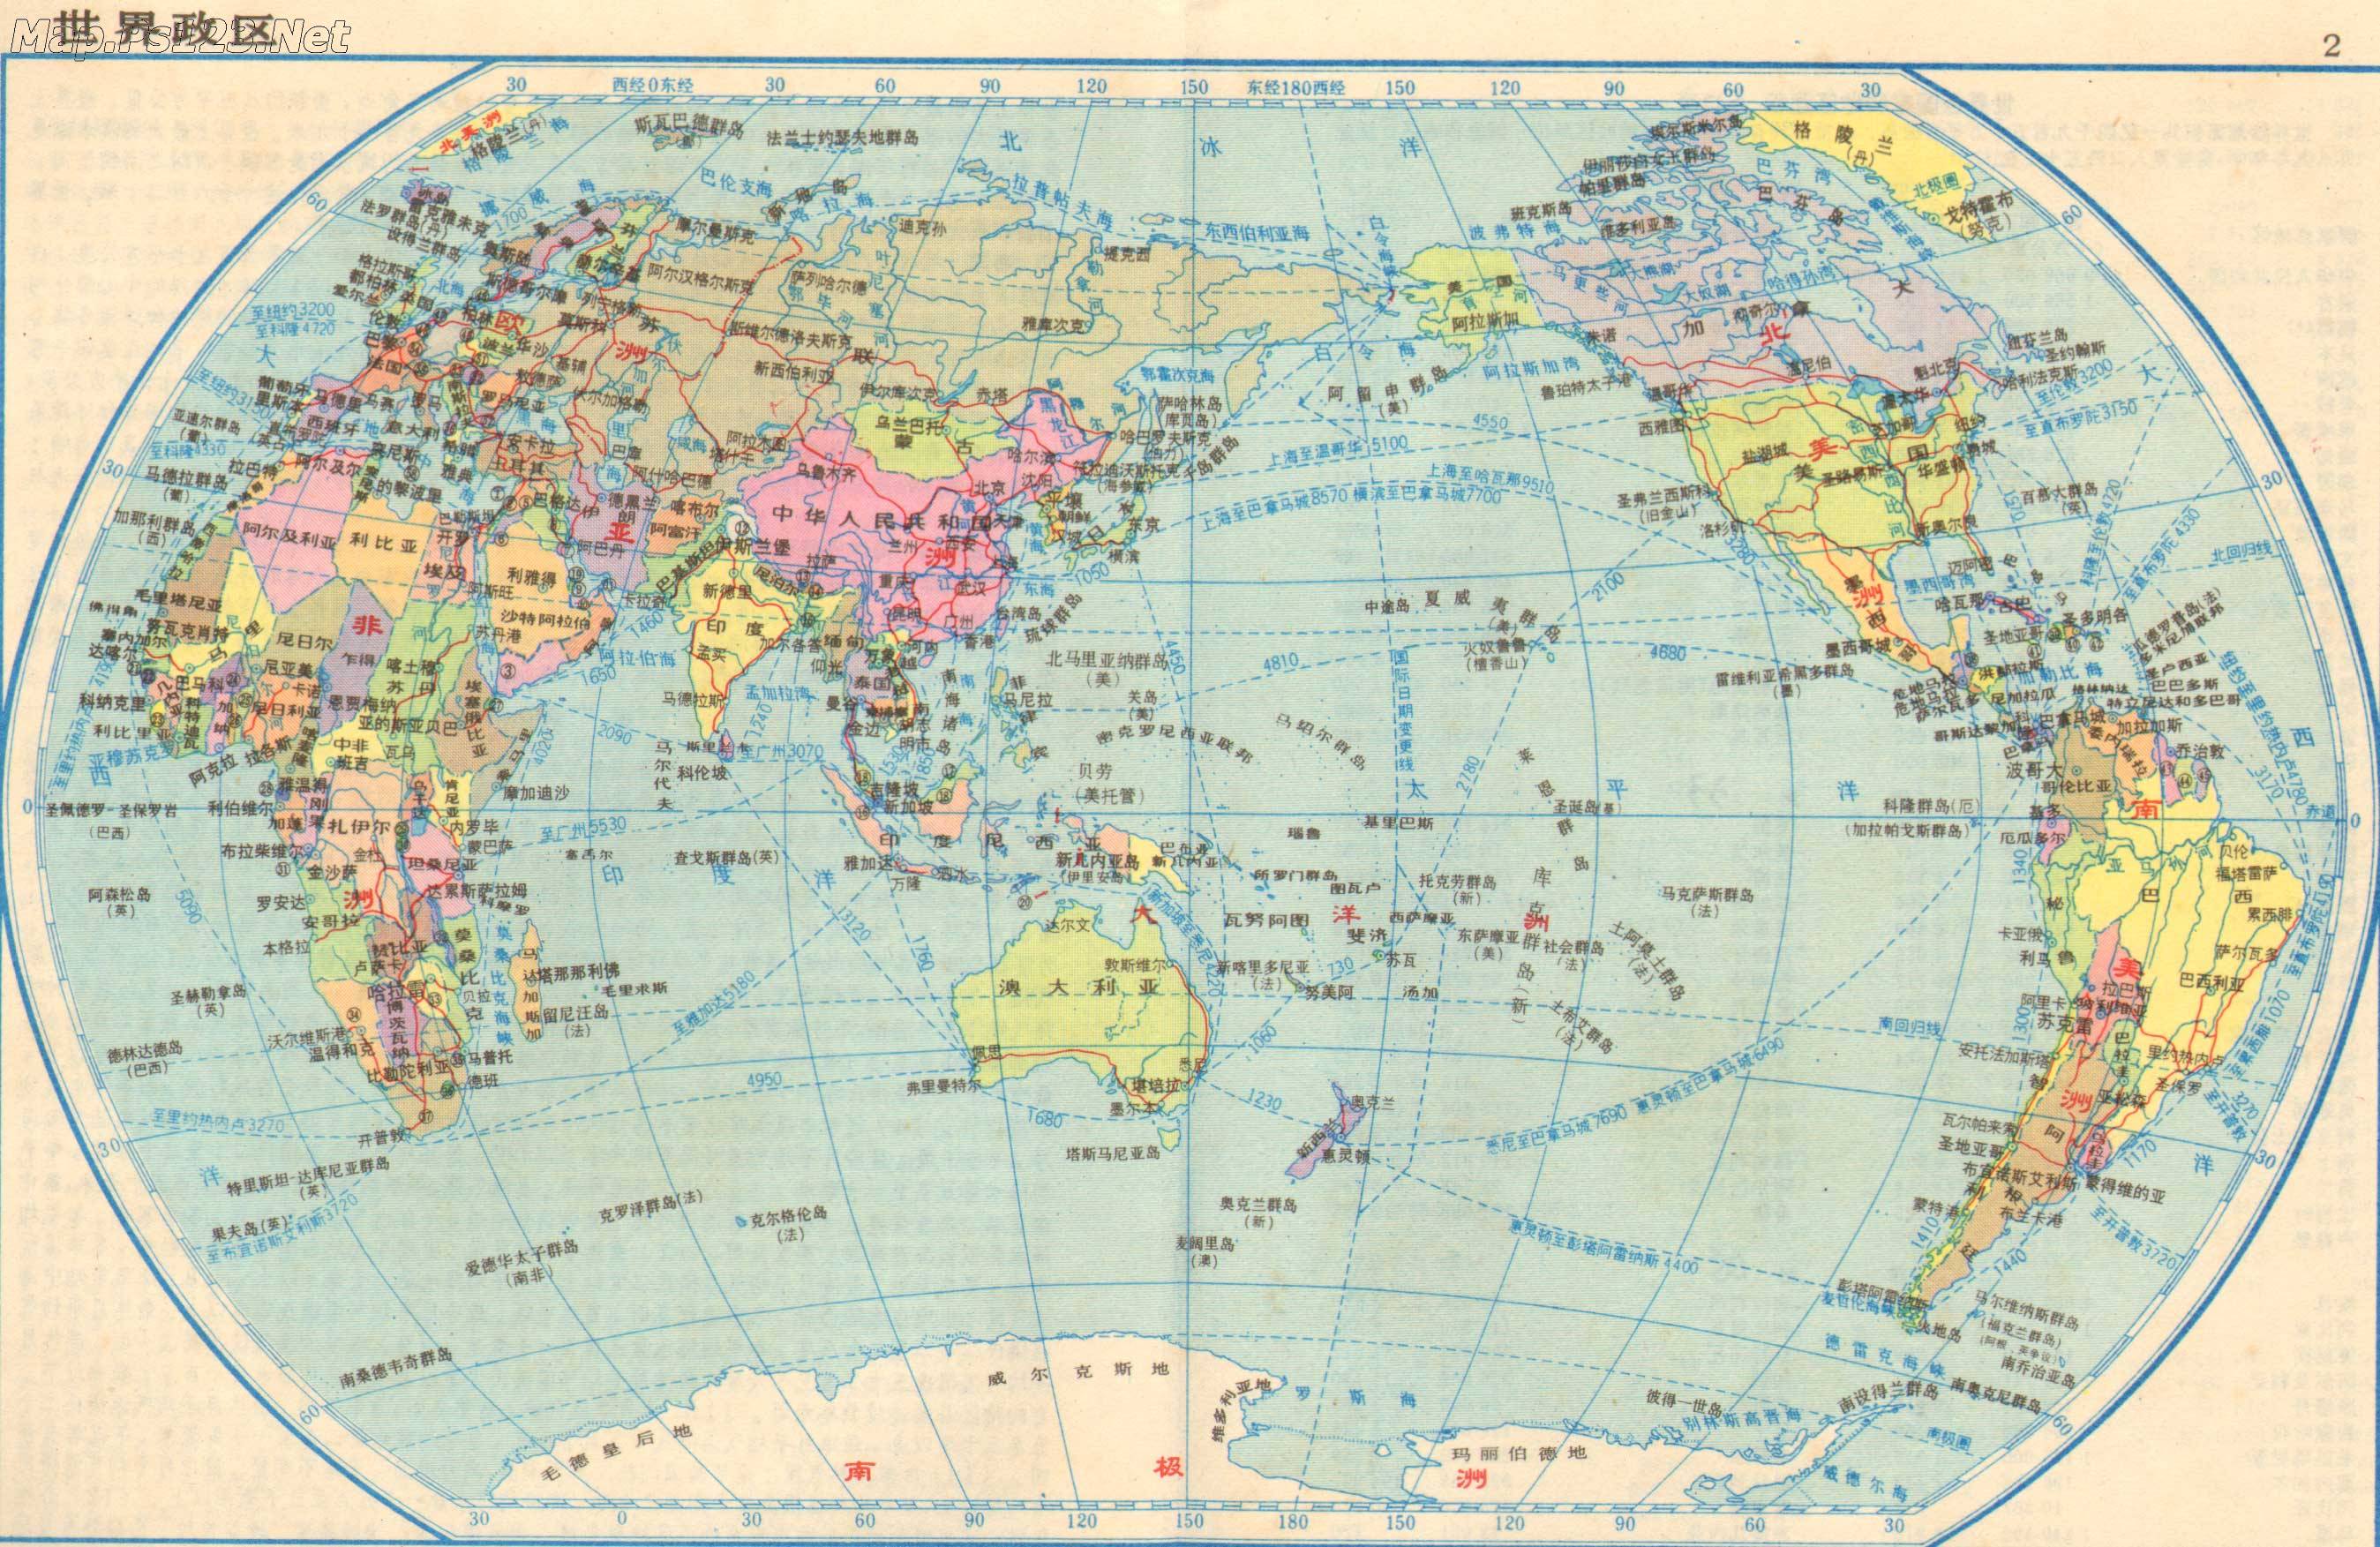 超污迷你世界地图照片